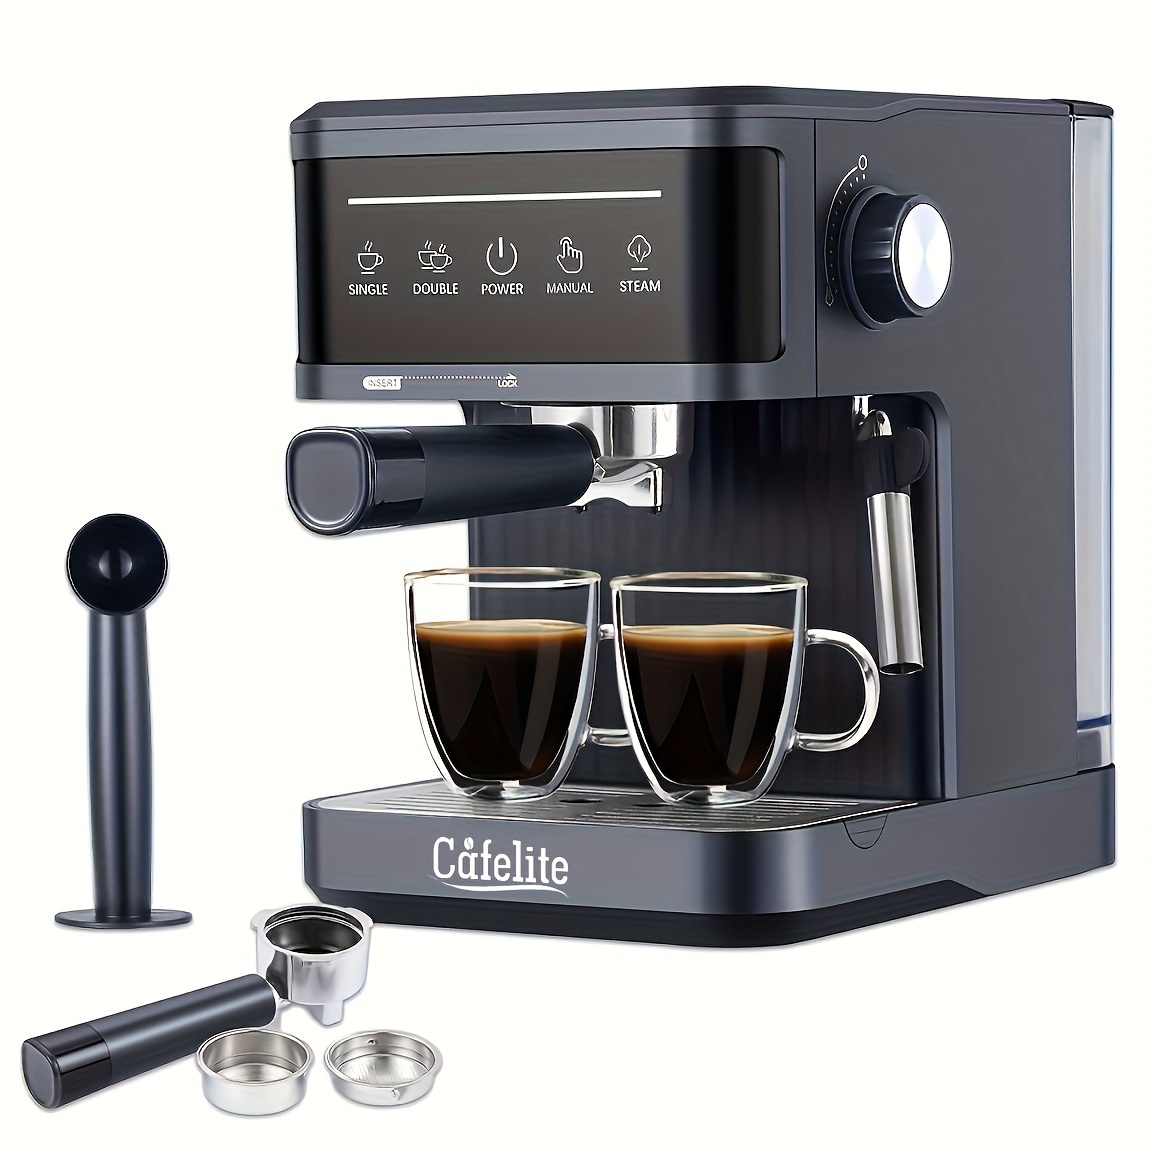 Termalimex - ¡Máquina de Espresso Todo en Uno! La Cafetera Breville permite  crear café de especialidad desde casa, degustando de un aroma y sabor único  al comenzar o terminar el día. Además